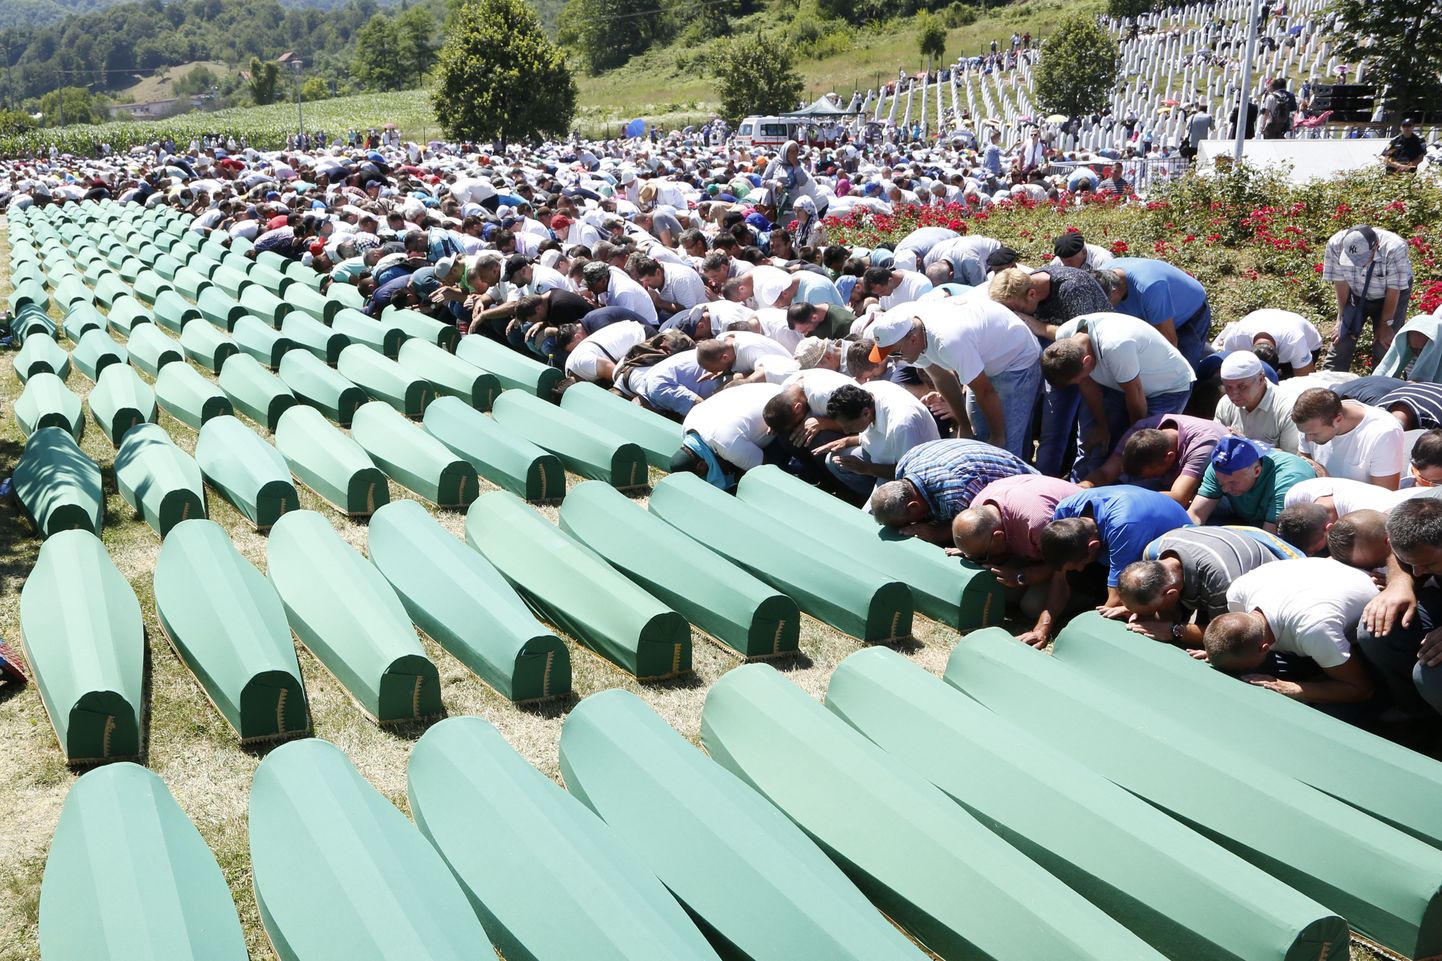 Bosnialased jätavad hüvasti 127 genotsiidi ohvriga, kelle isikud tuvastati alles nüüd, 21 aastat hiljem.